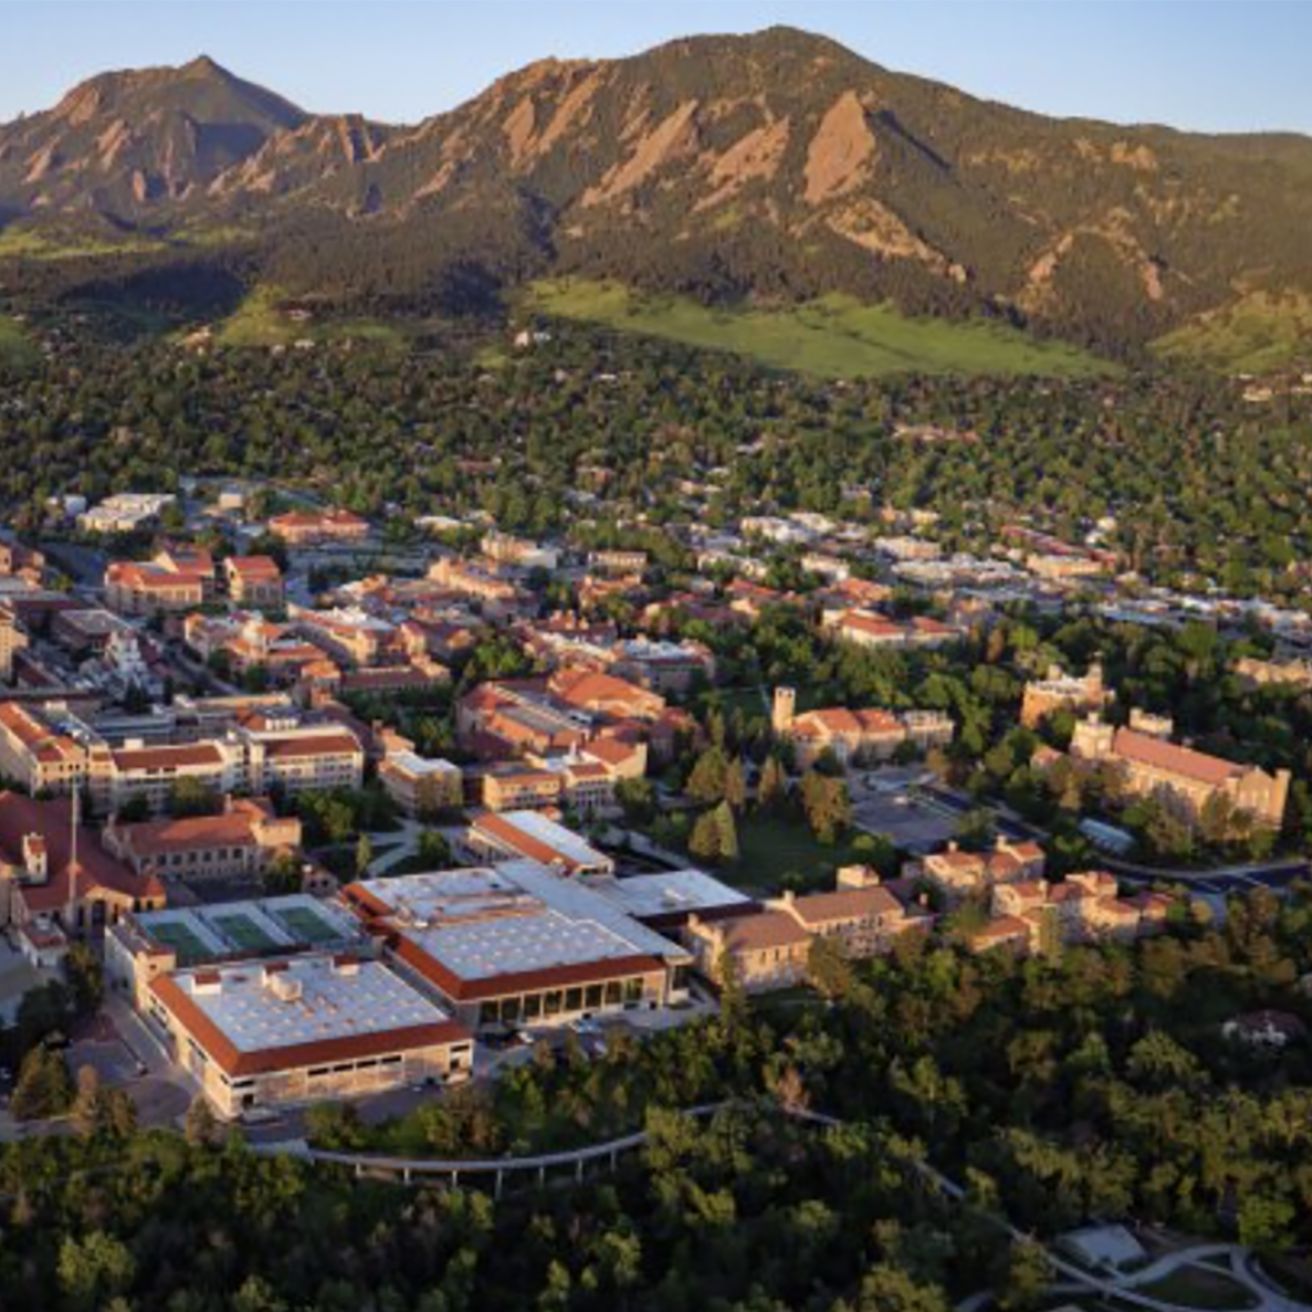 University of Colorado at Boulder campus